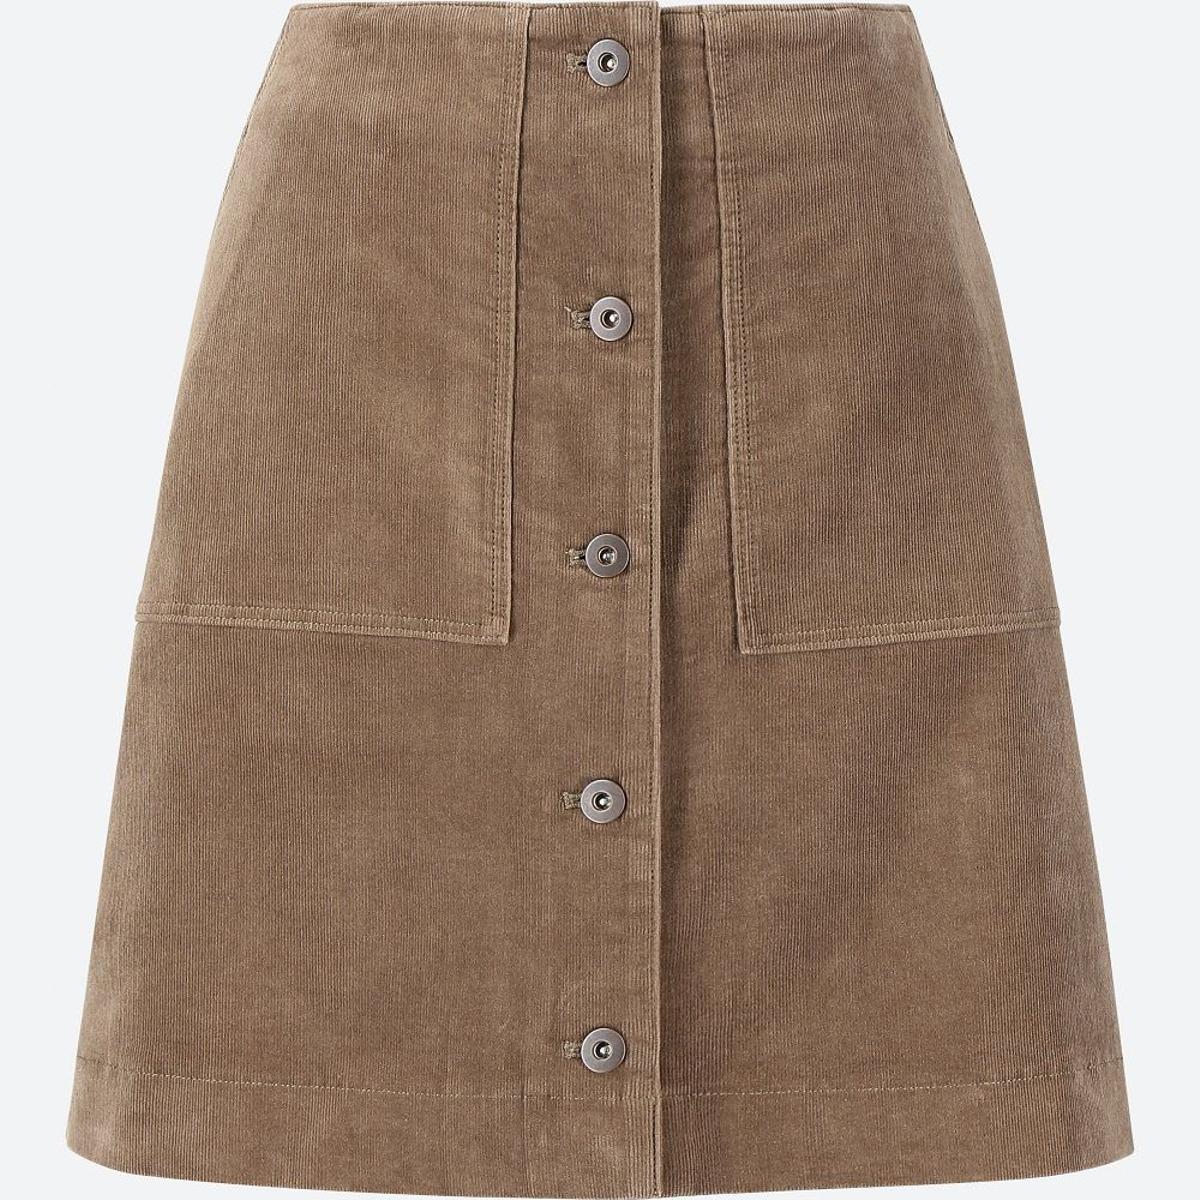 La minifalda en marrón